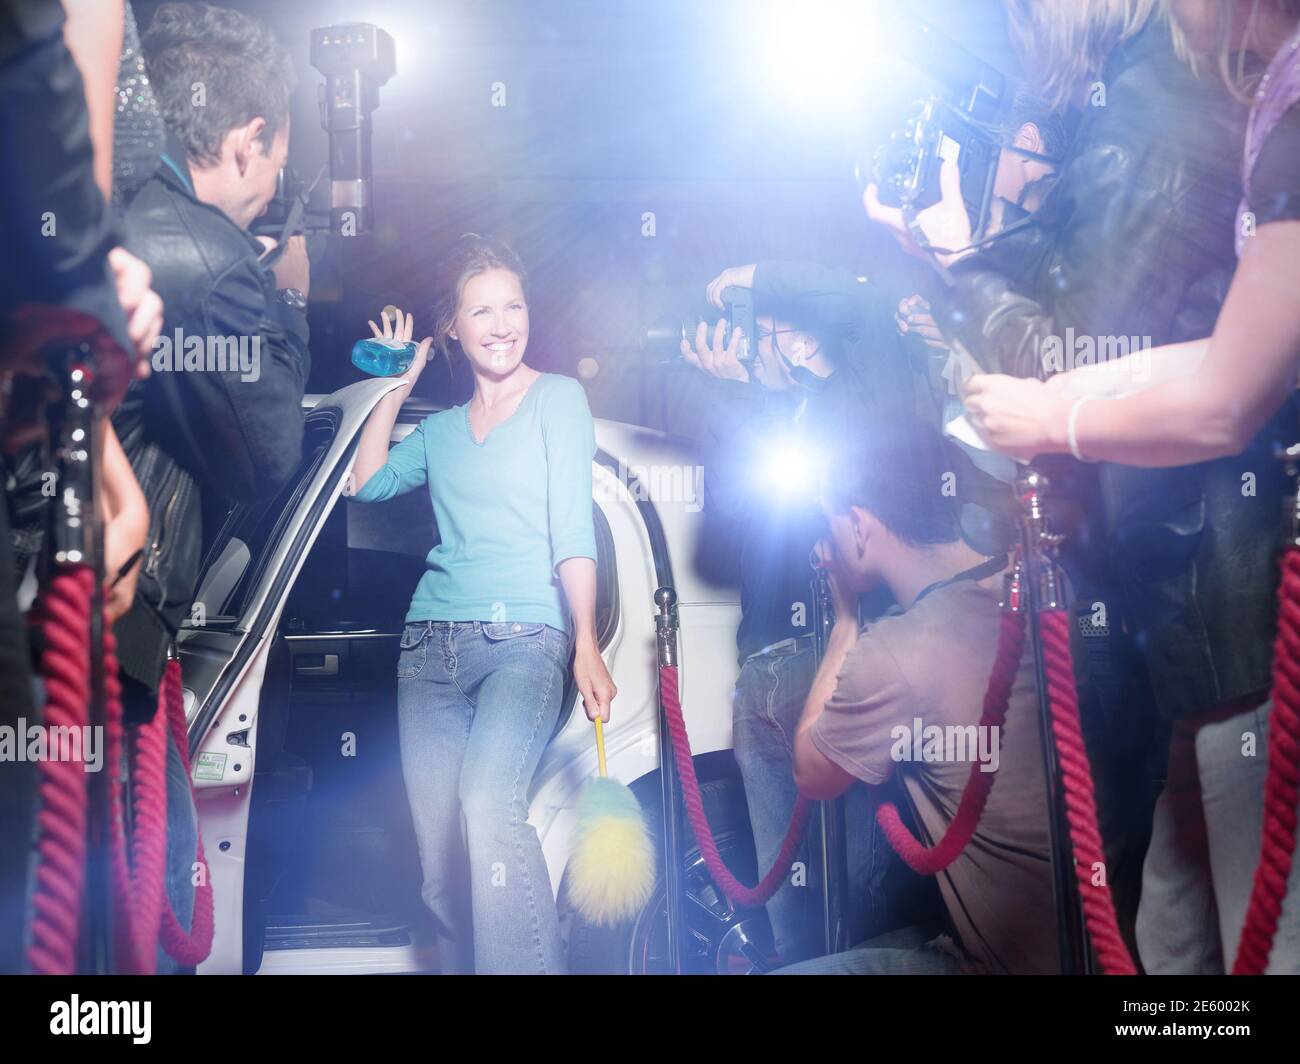 Mujer emocionada con equipo de limpieza saliendo de la limusina frente de paparazzi Foto de stock